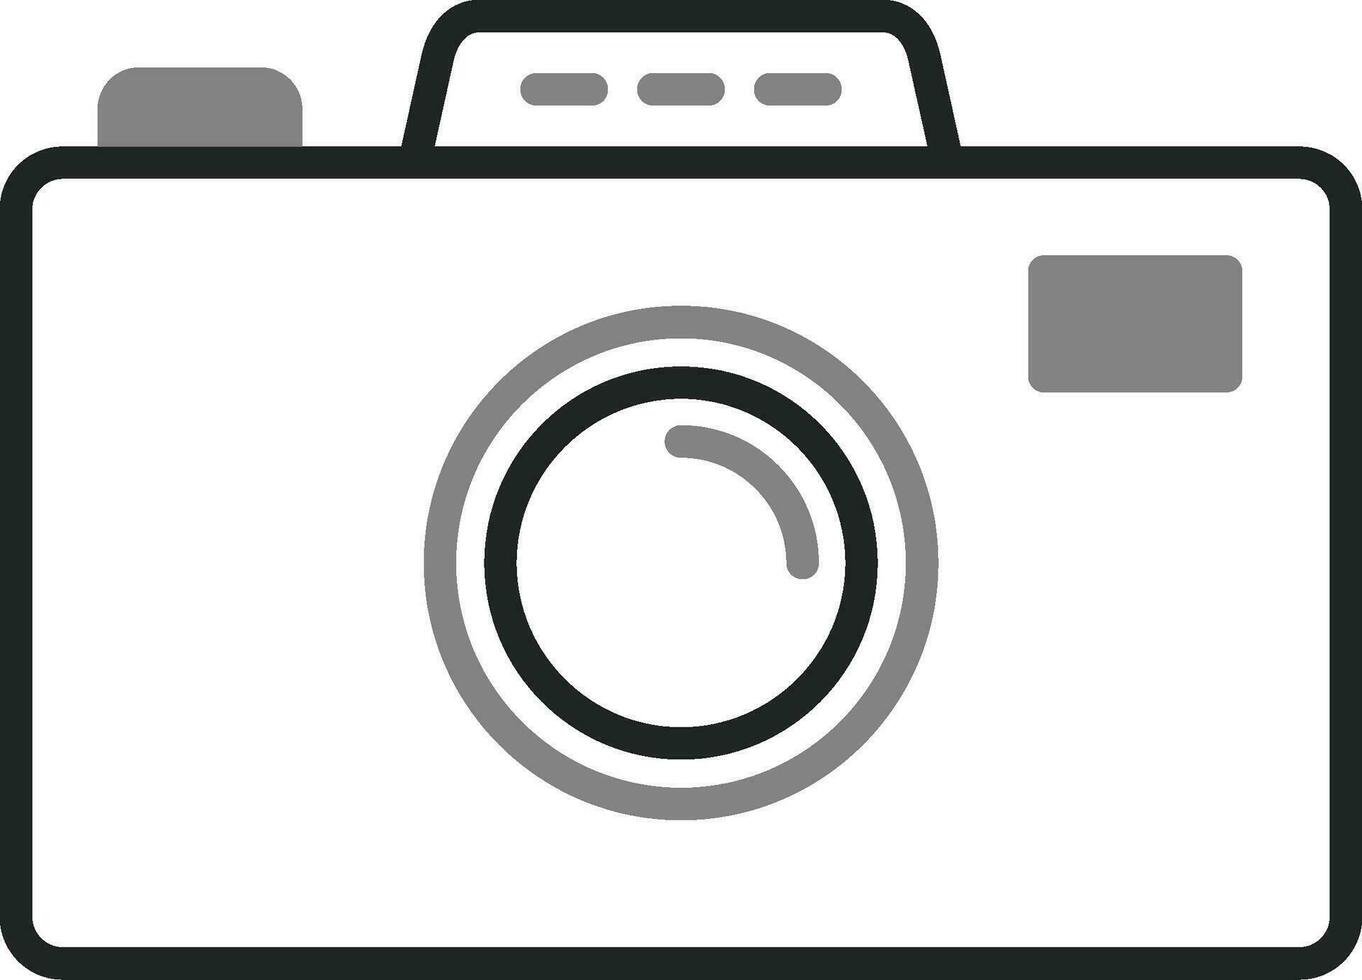 icona di vettore della macchina fotografica della foto